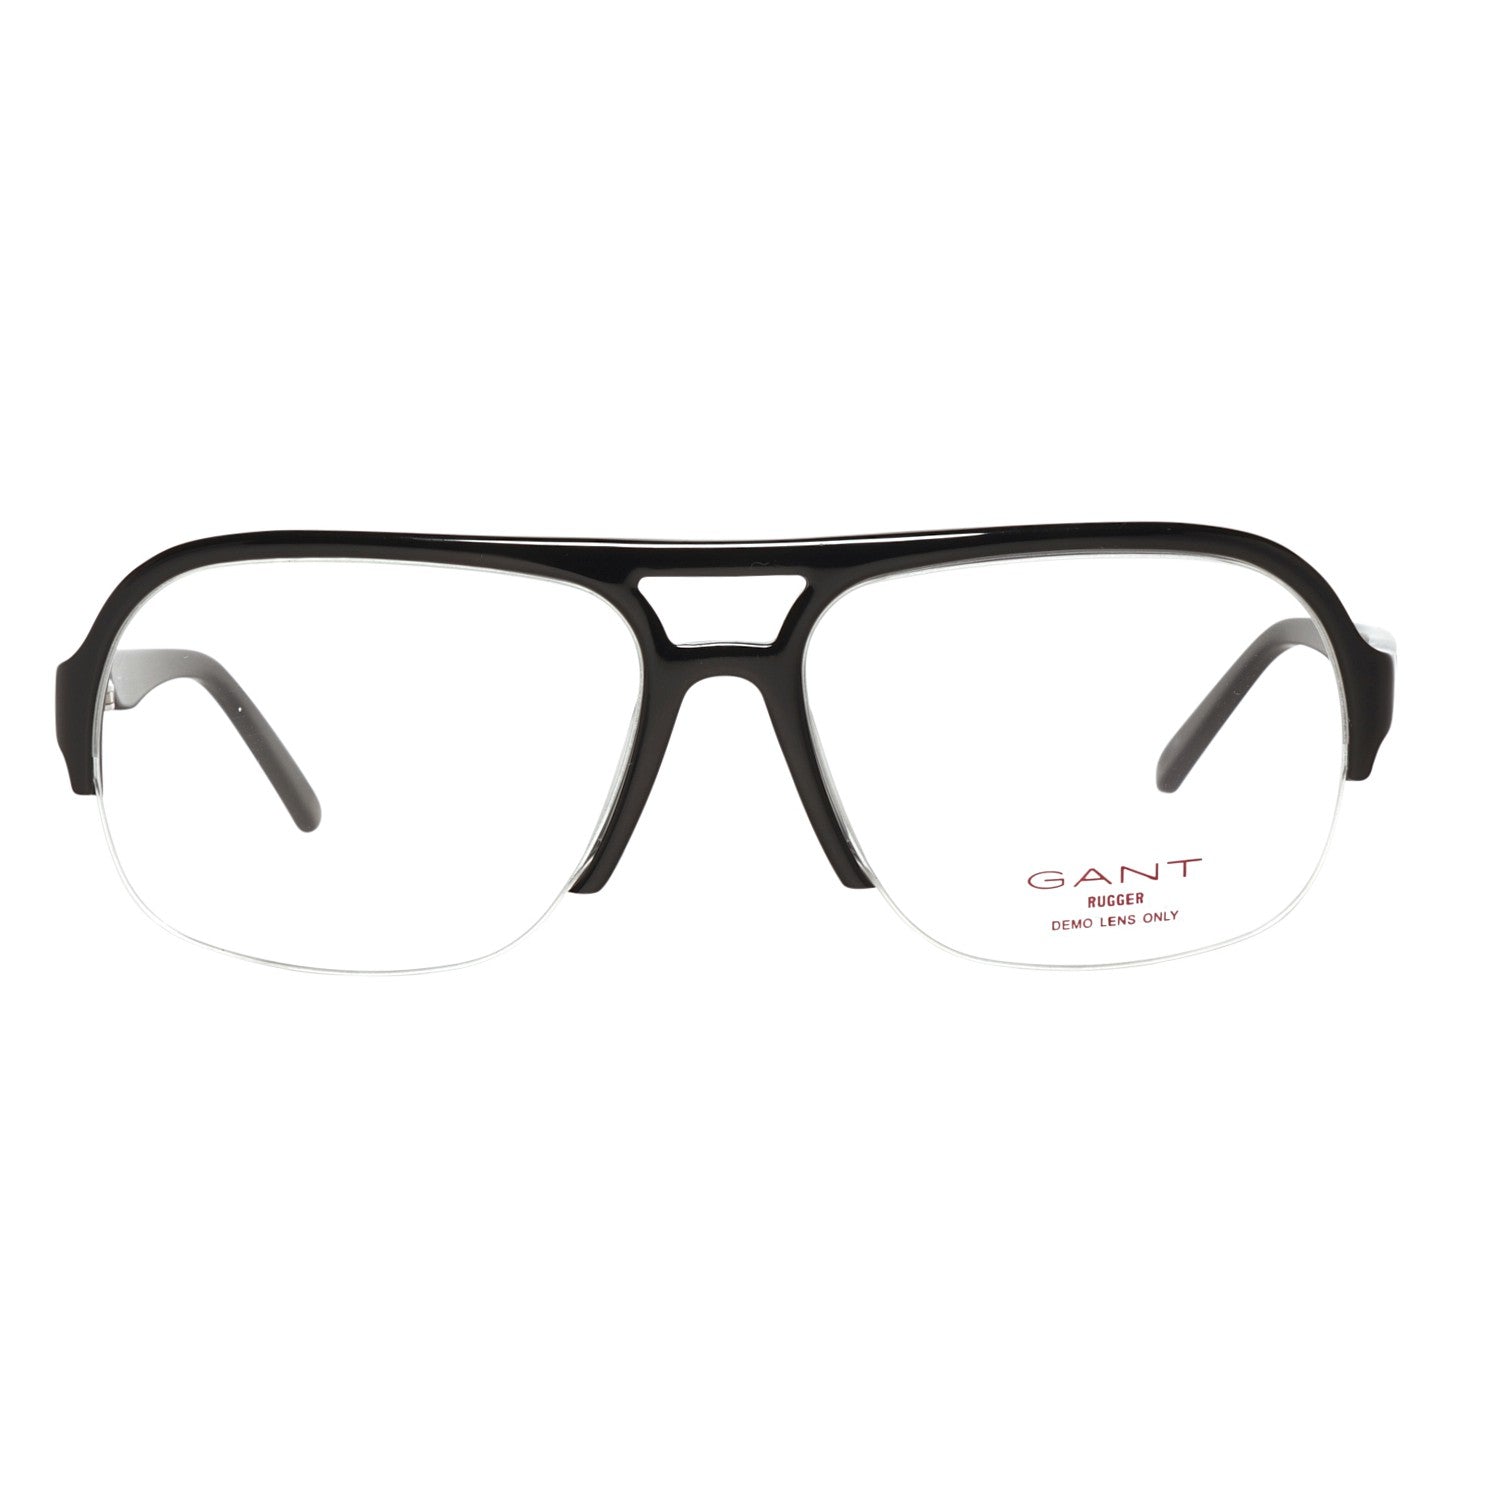 Gant Frames Gant Glasses Frames GRA078 B84 56 | GR KALB BLK 56 Eyeglasses Eyewear UK USA Australia 